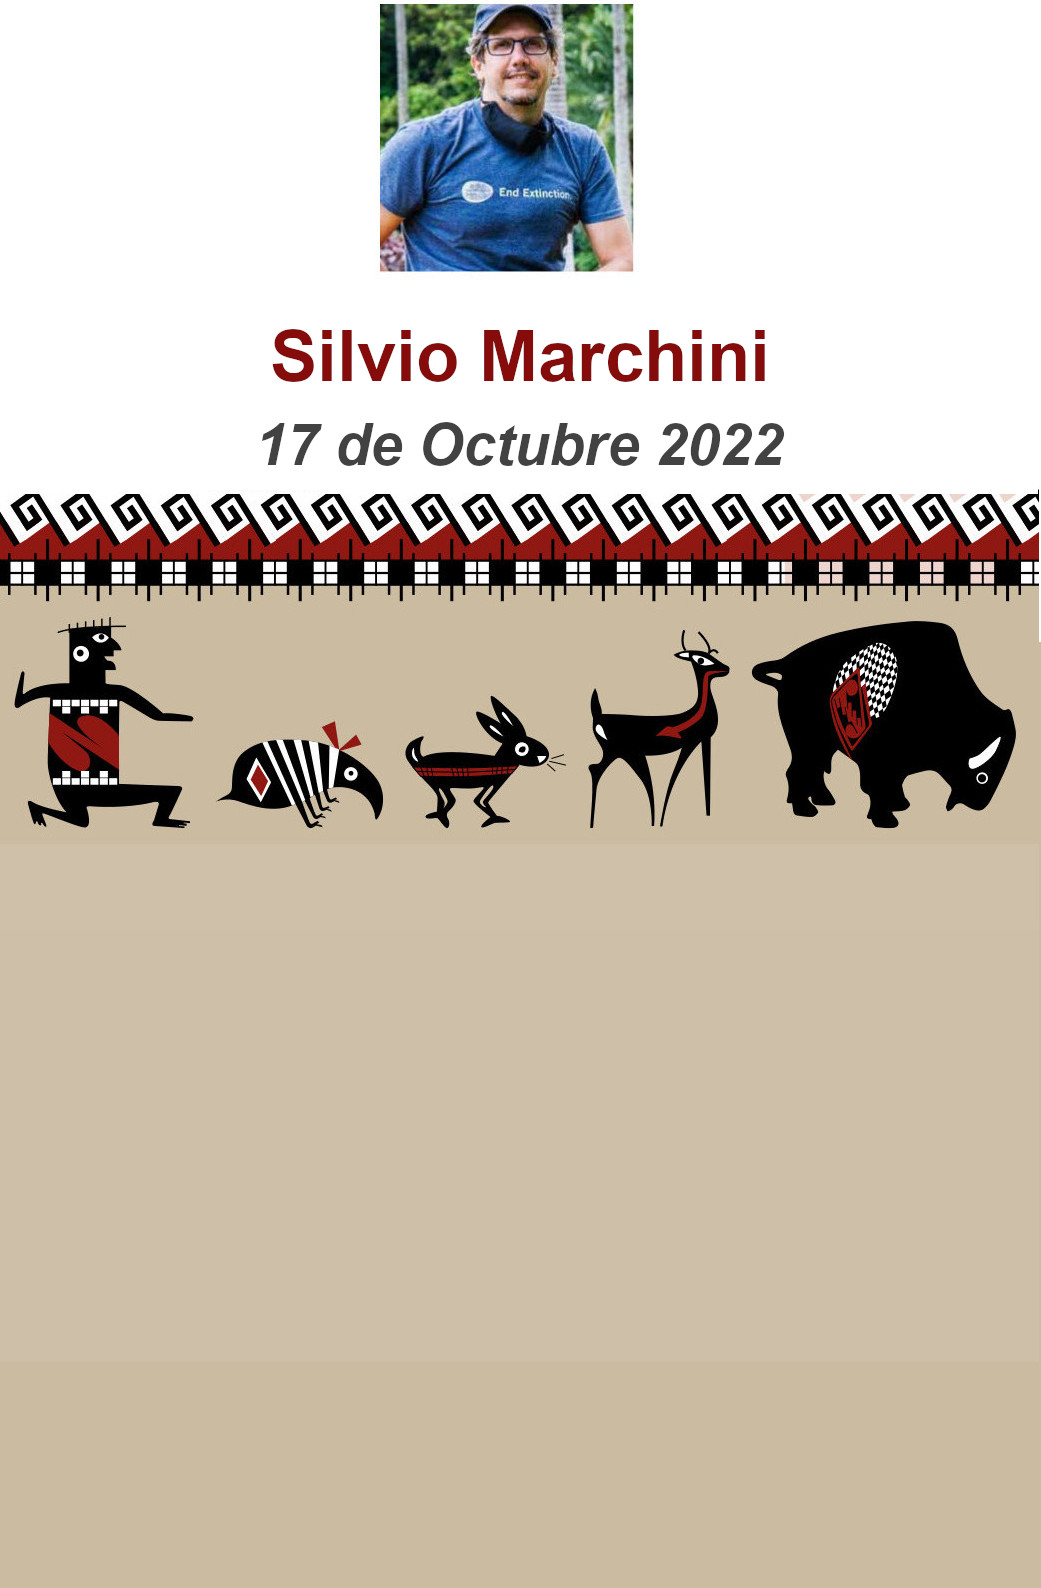 Silvio Marchini